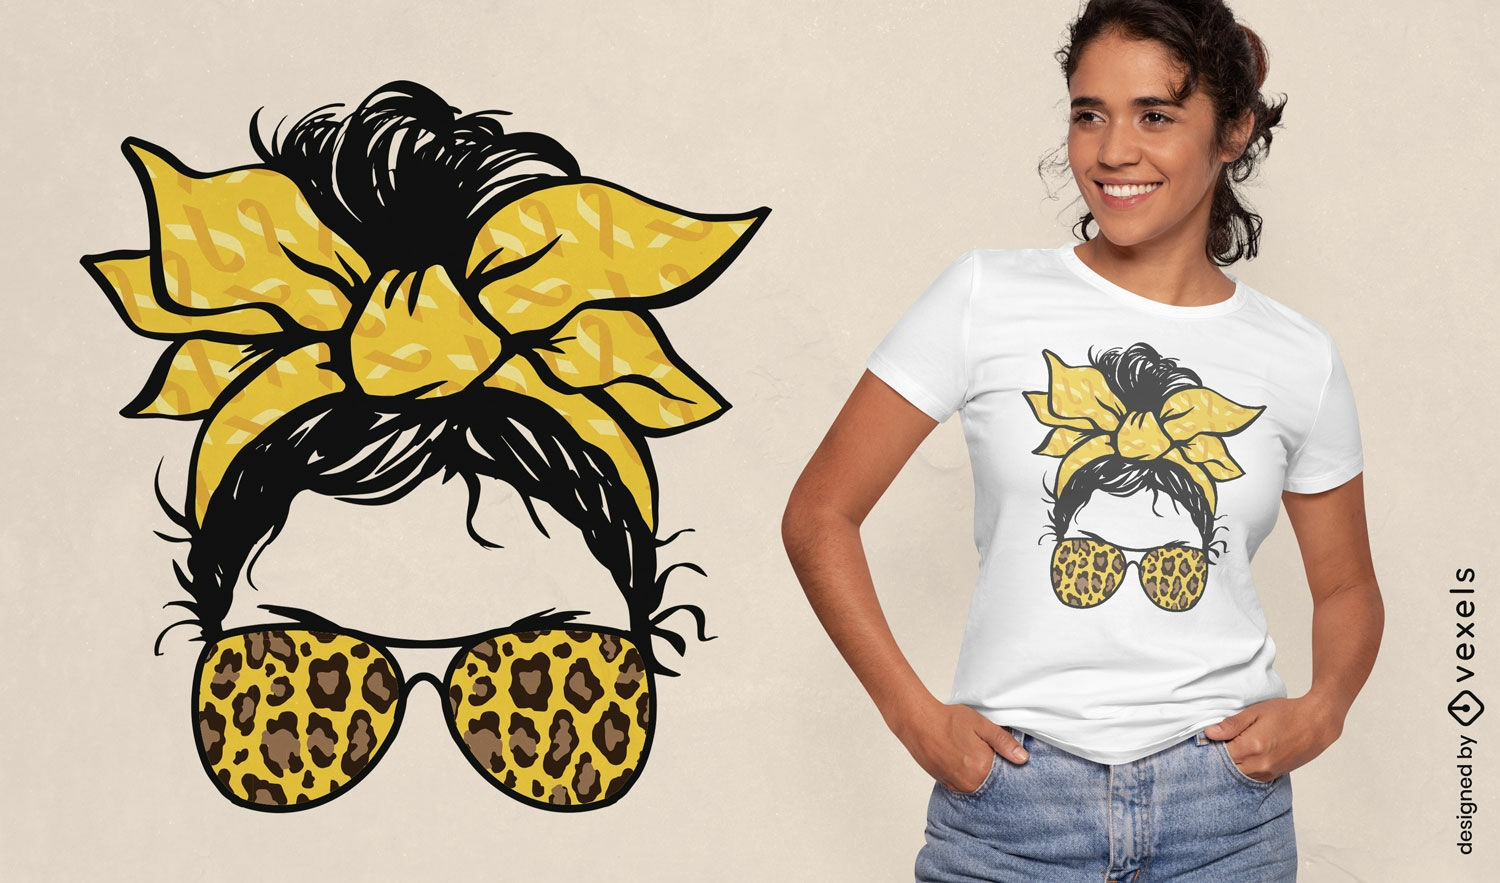 Sunglasses girl t-shirt design